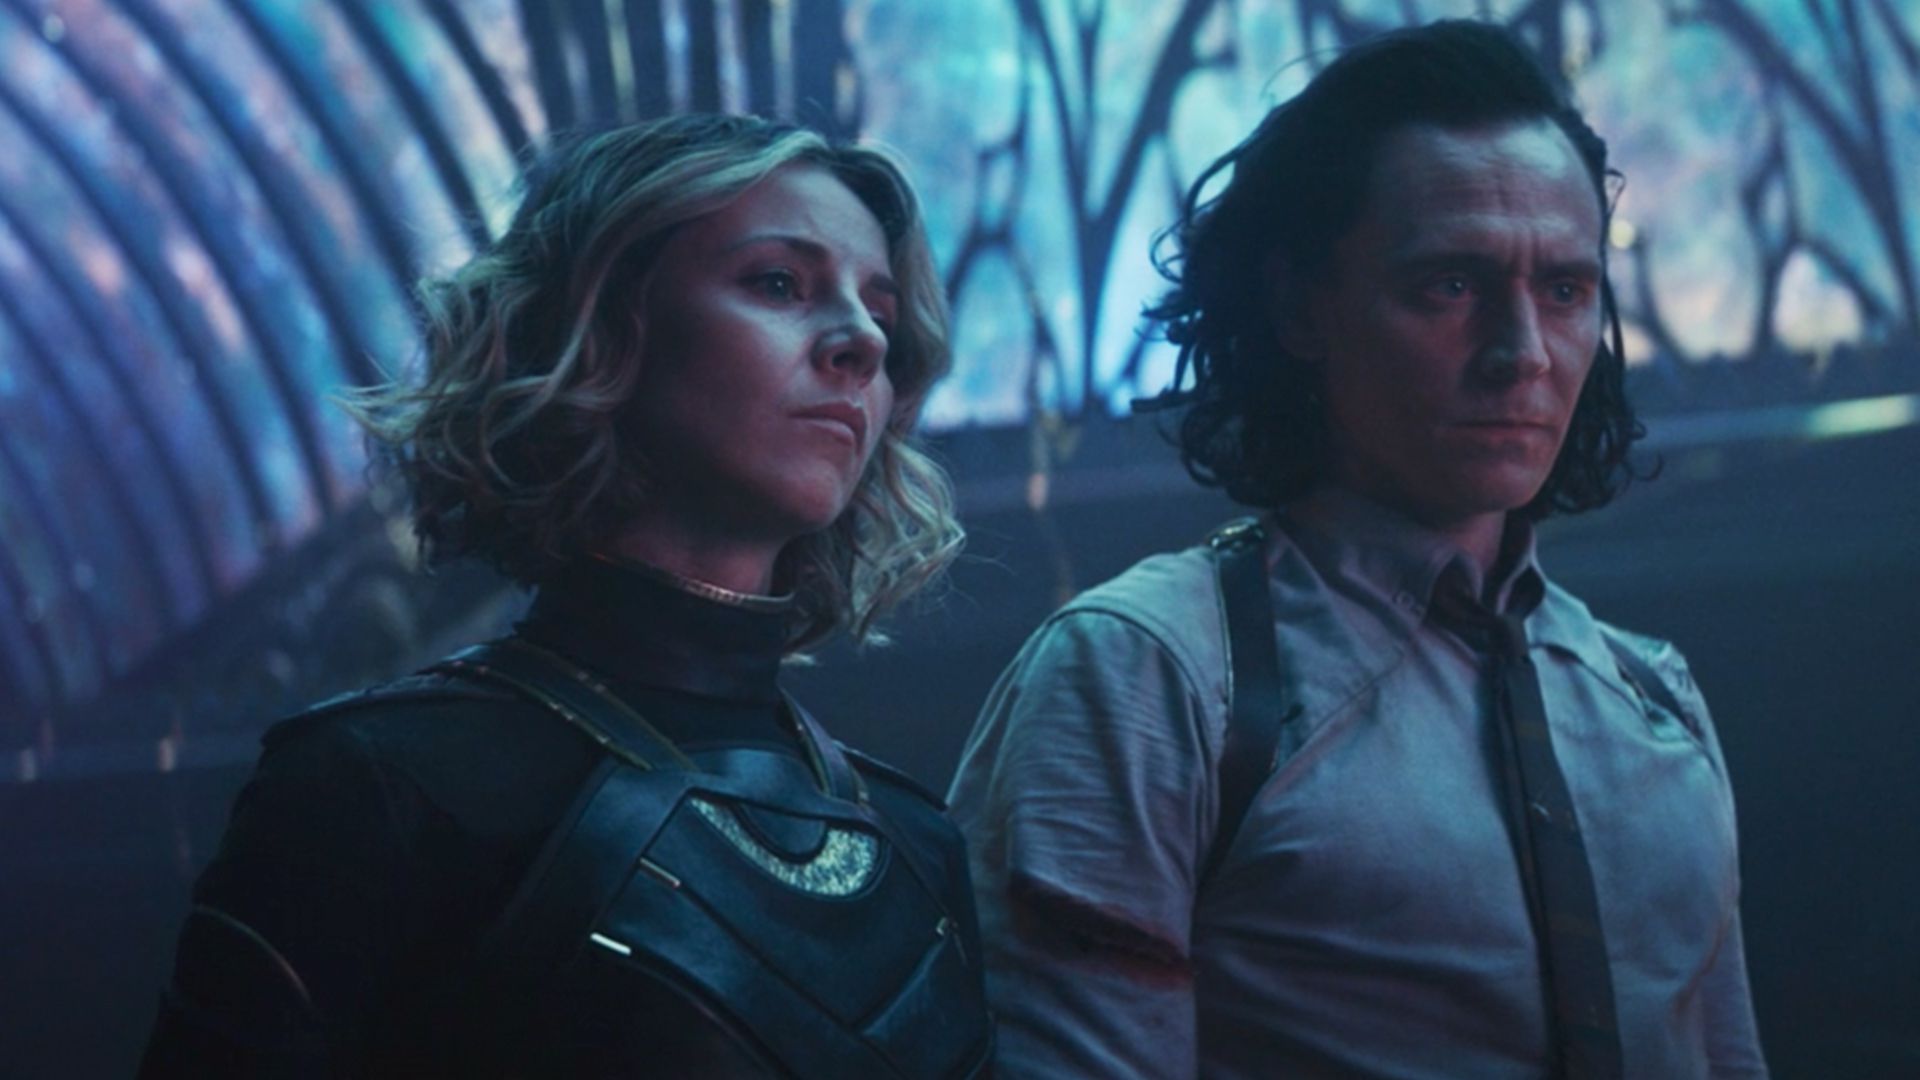 تام هیدلستون در نقش لوکی و سوفیا دی مارتینو در نقش سیلوی پس از رسیدن به قلعه کانگ در قسمت ششم سریال Loki 